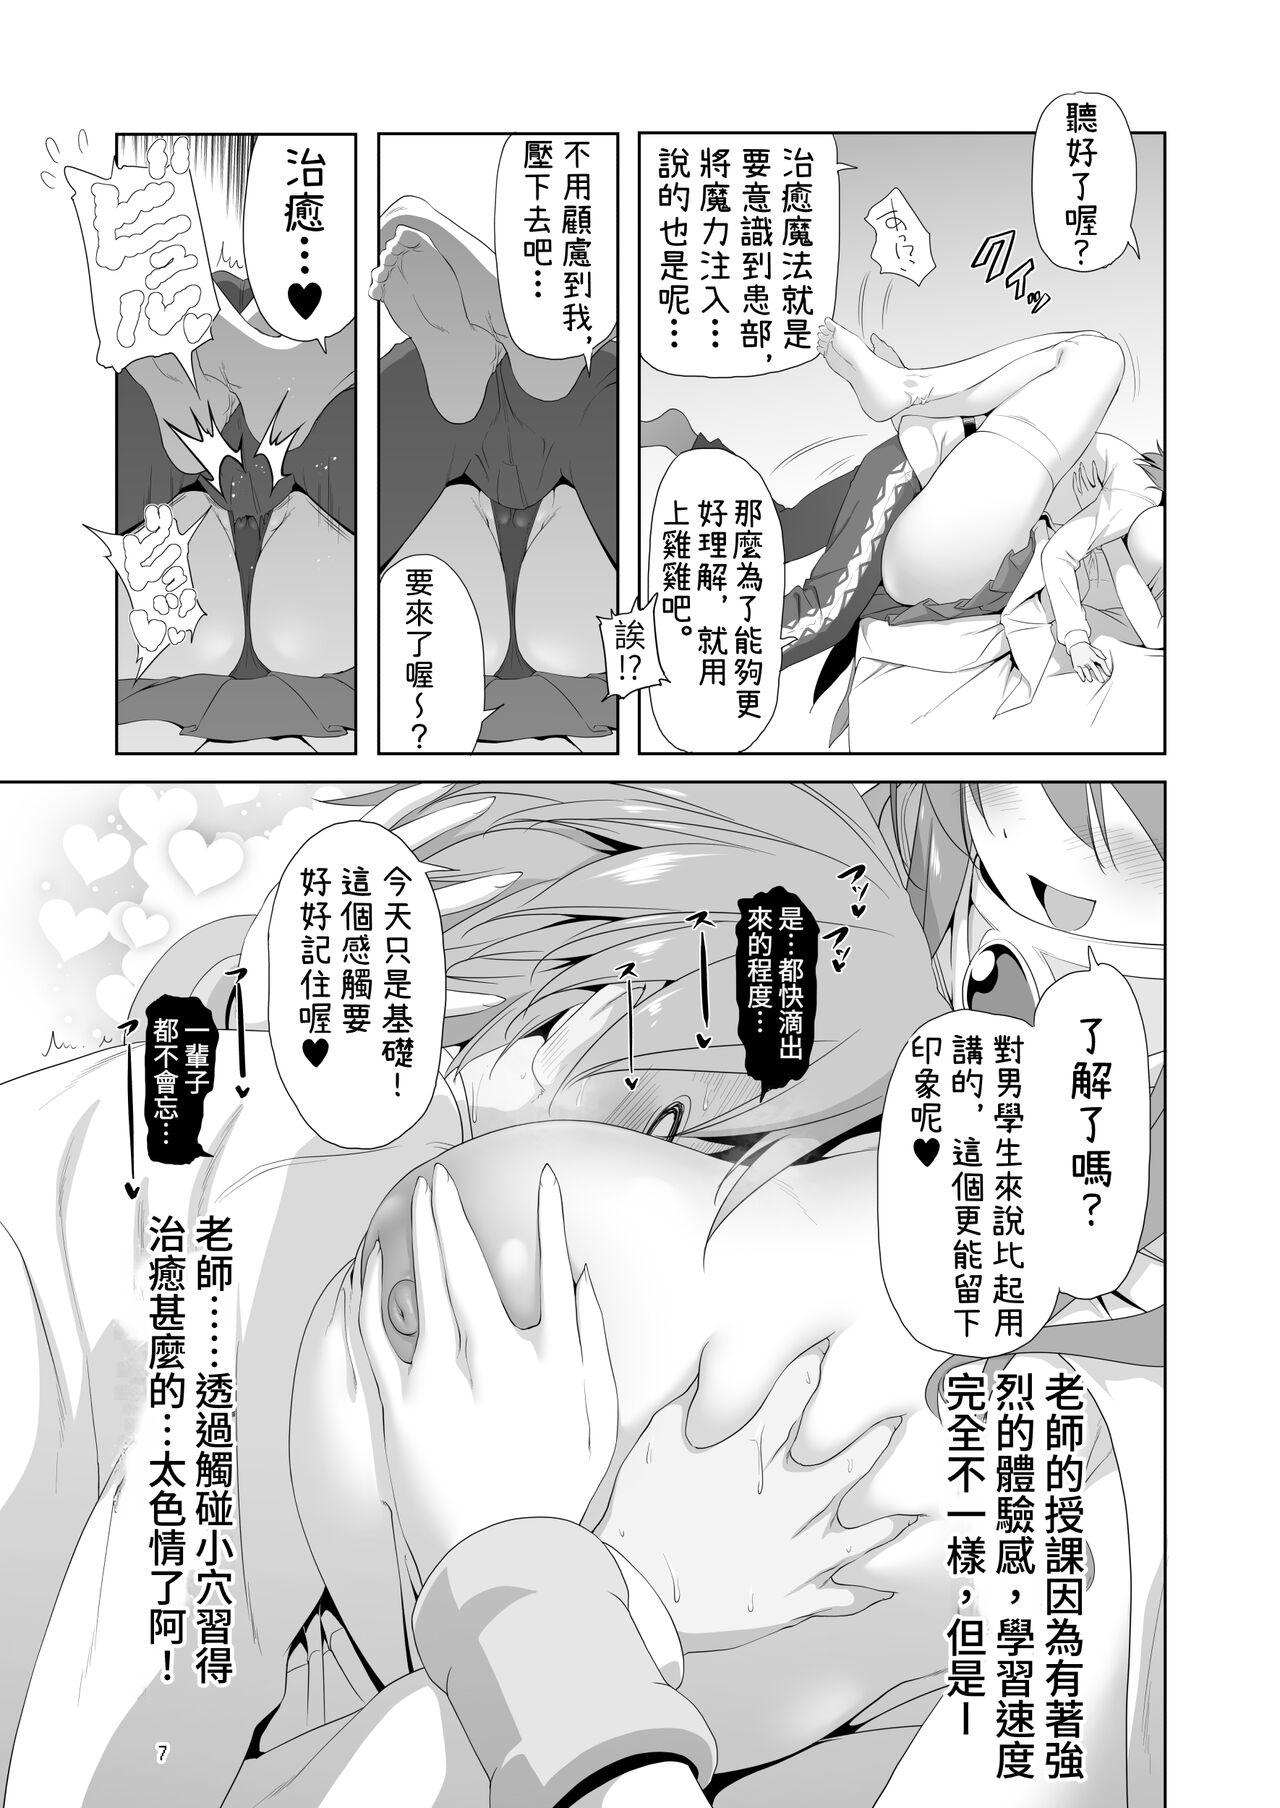 Gangbang Makotoni Zannen desu ga Bouken no Sho 9 wa Kiete Shimaimashita. - Original Sfm - Page 7